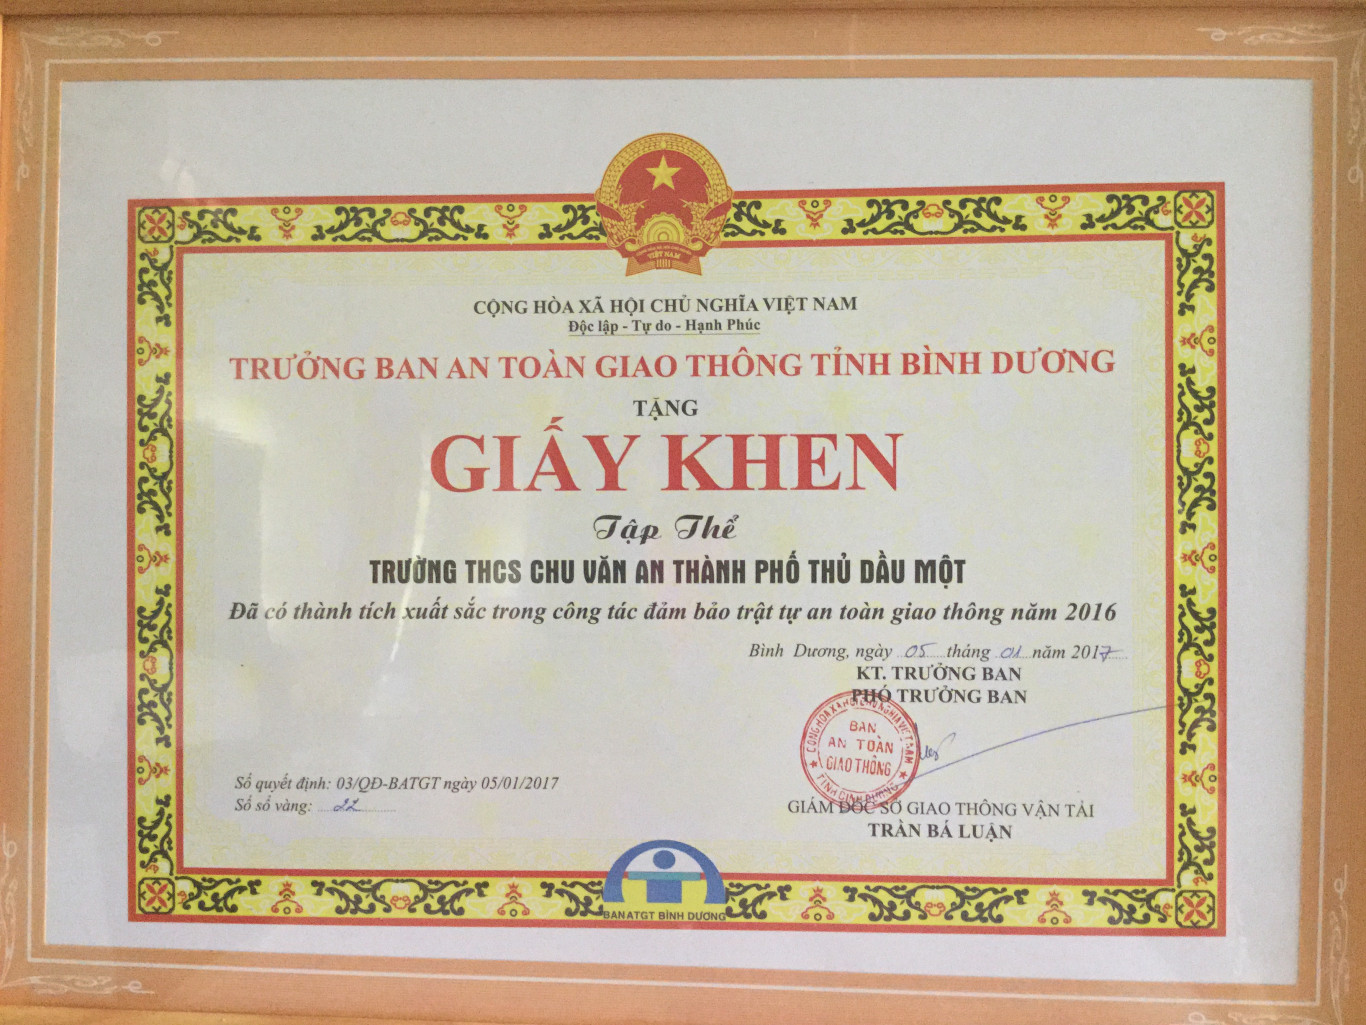 Trưởng ban ATGT Tỉnh Bình Dương tặng giấy khen trường THCS Chu Văn An